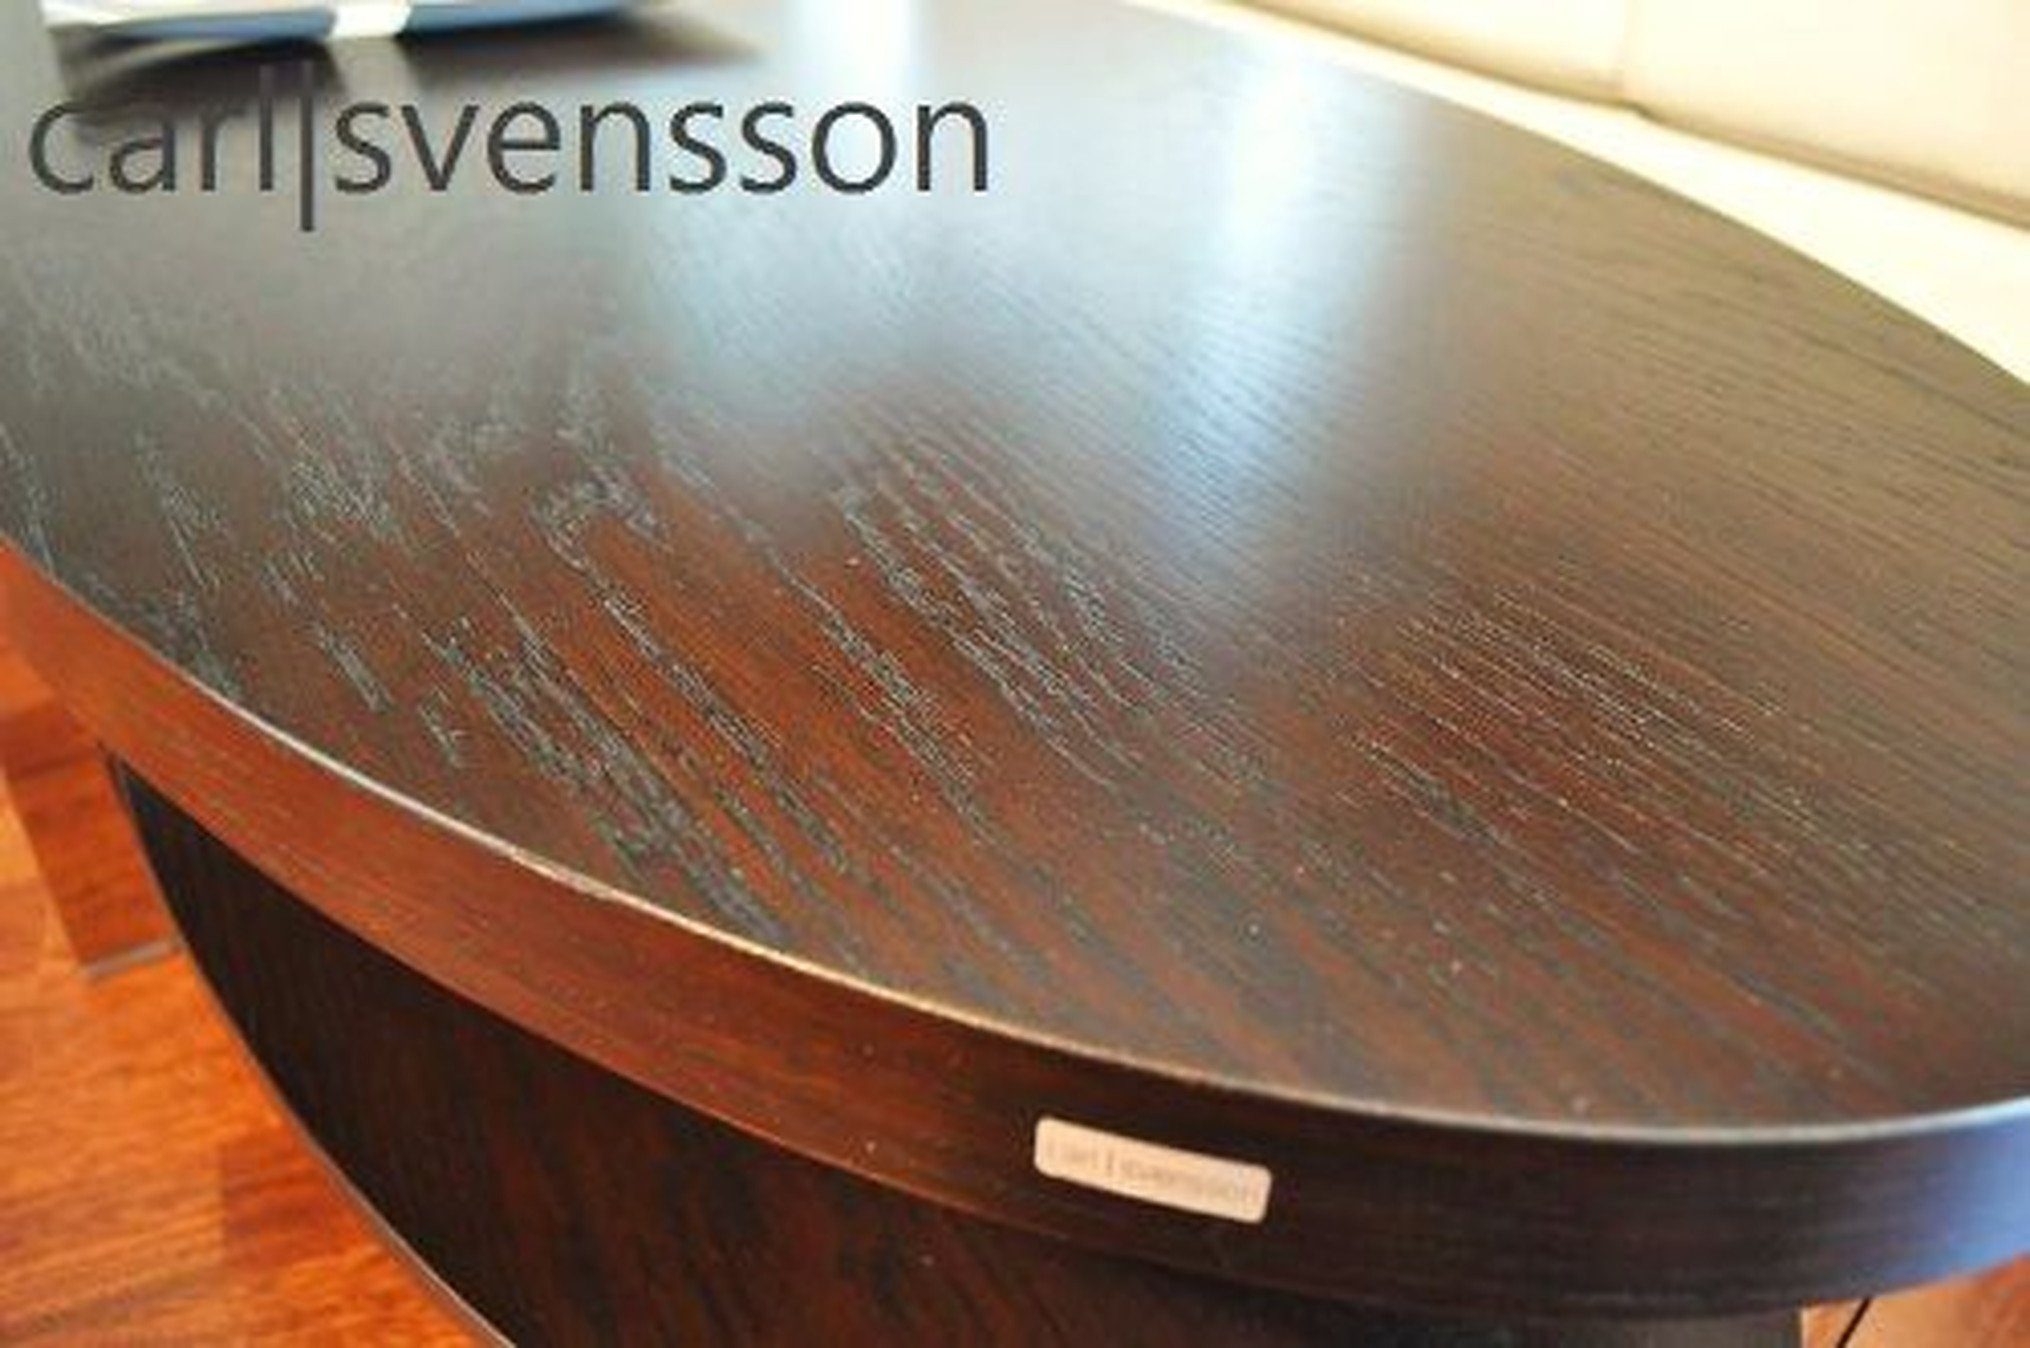 Wenge Tisch svensson carl Couchtisch / oval Couchtisch Wenge Walnuss O-111 Walnuss Design 118x60x33,5cm